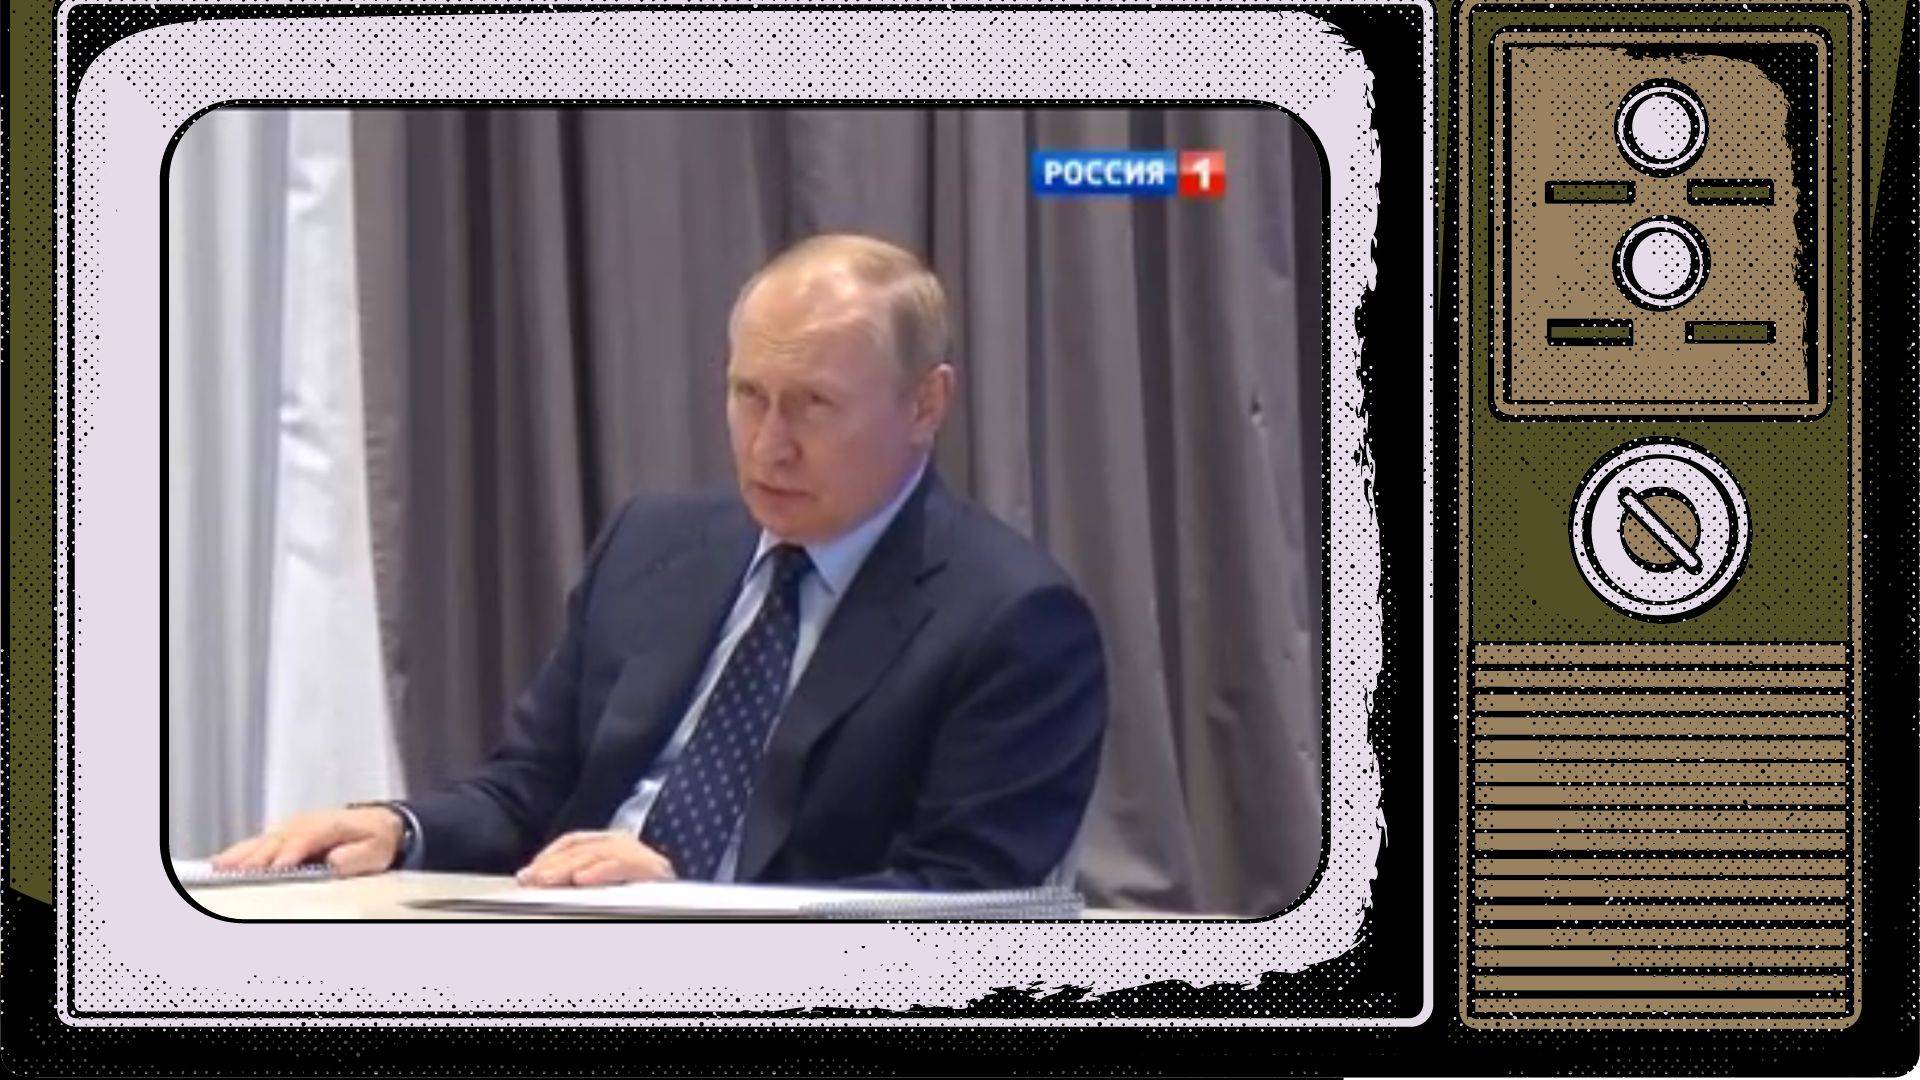 Grafika do artykułu GOWORIT MOSKWA: Putin skutecznie derusyfikuje Ukrainę. Ura! 